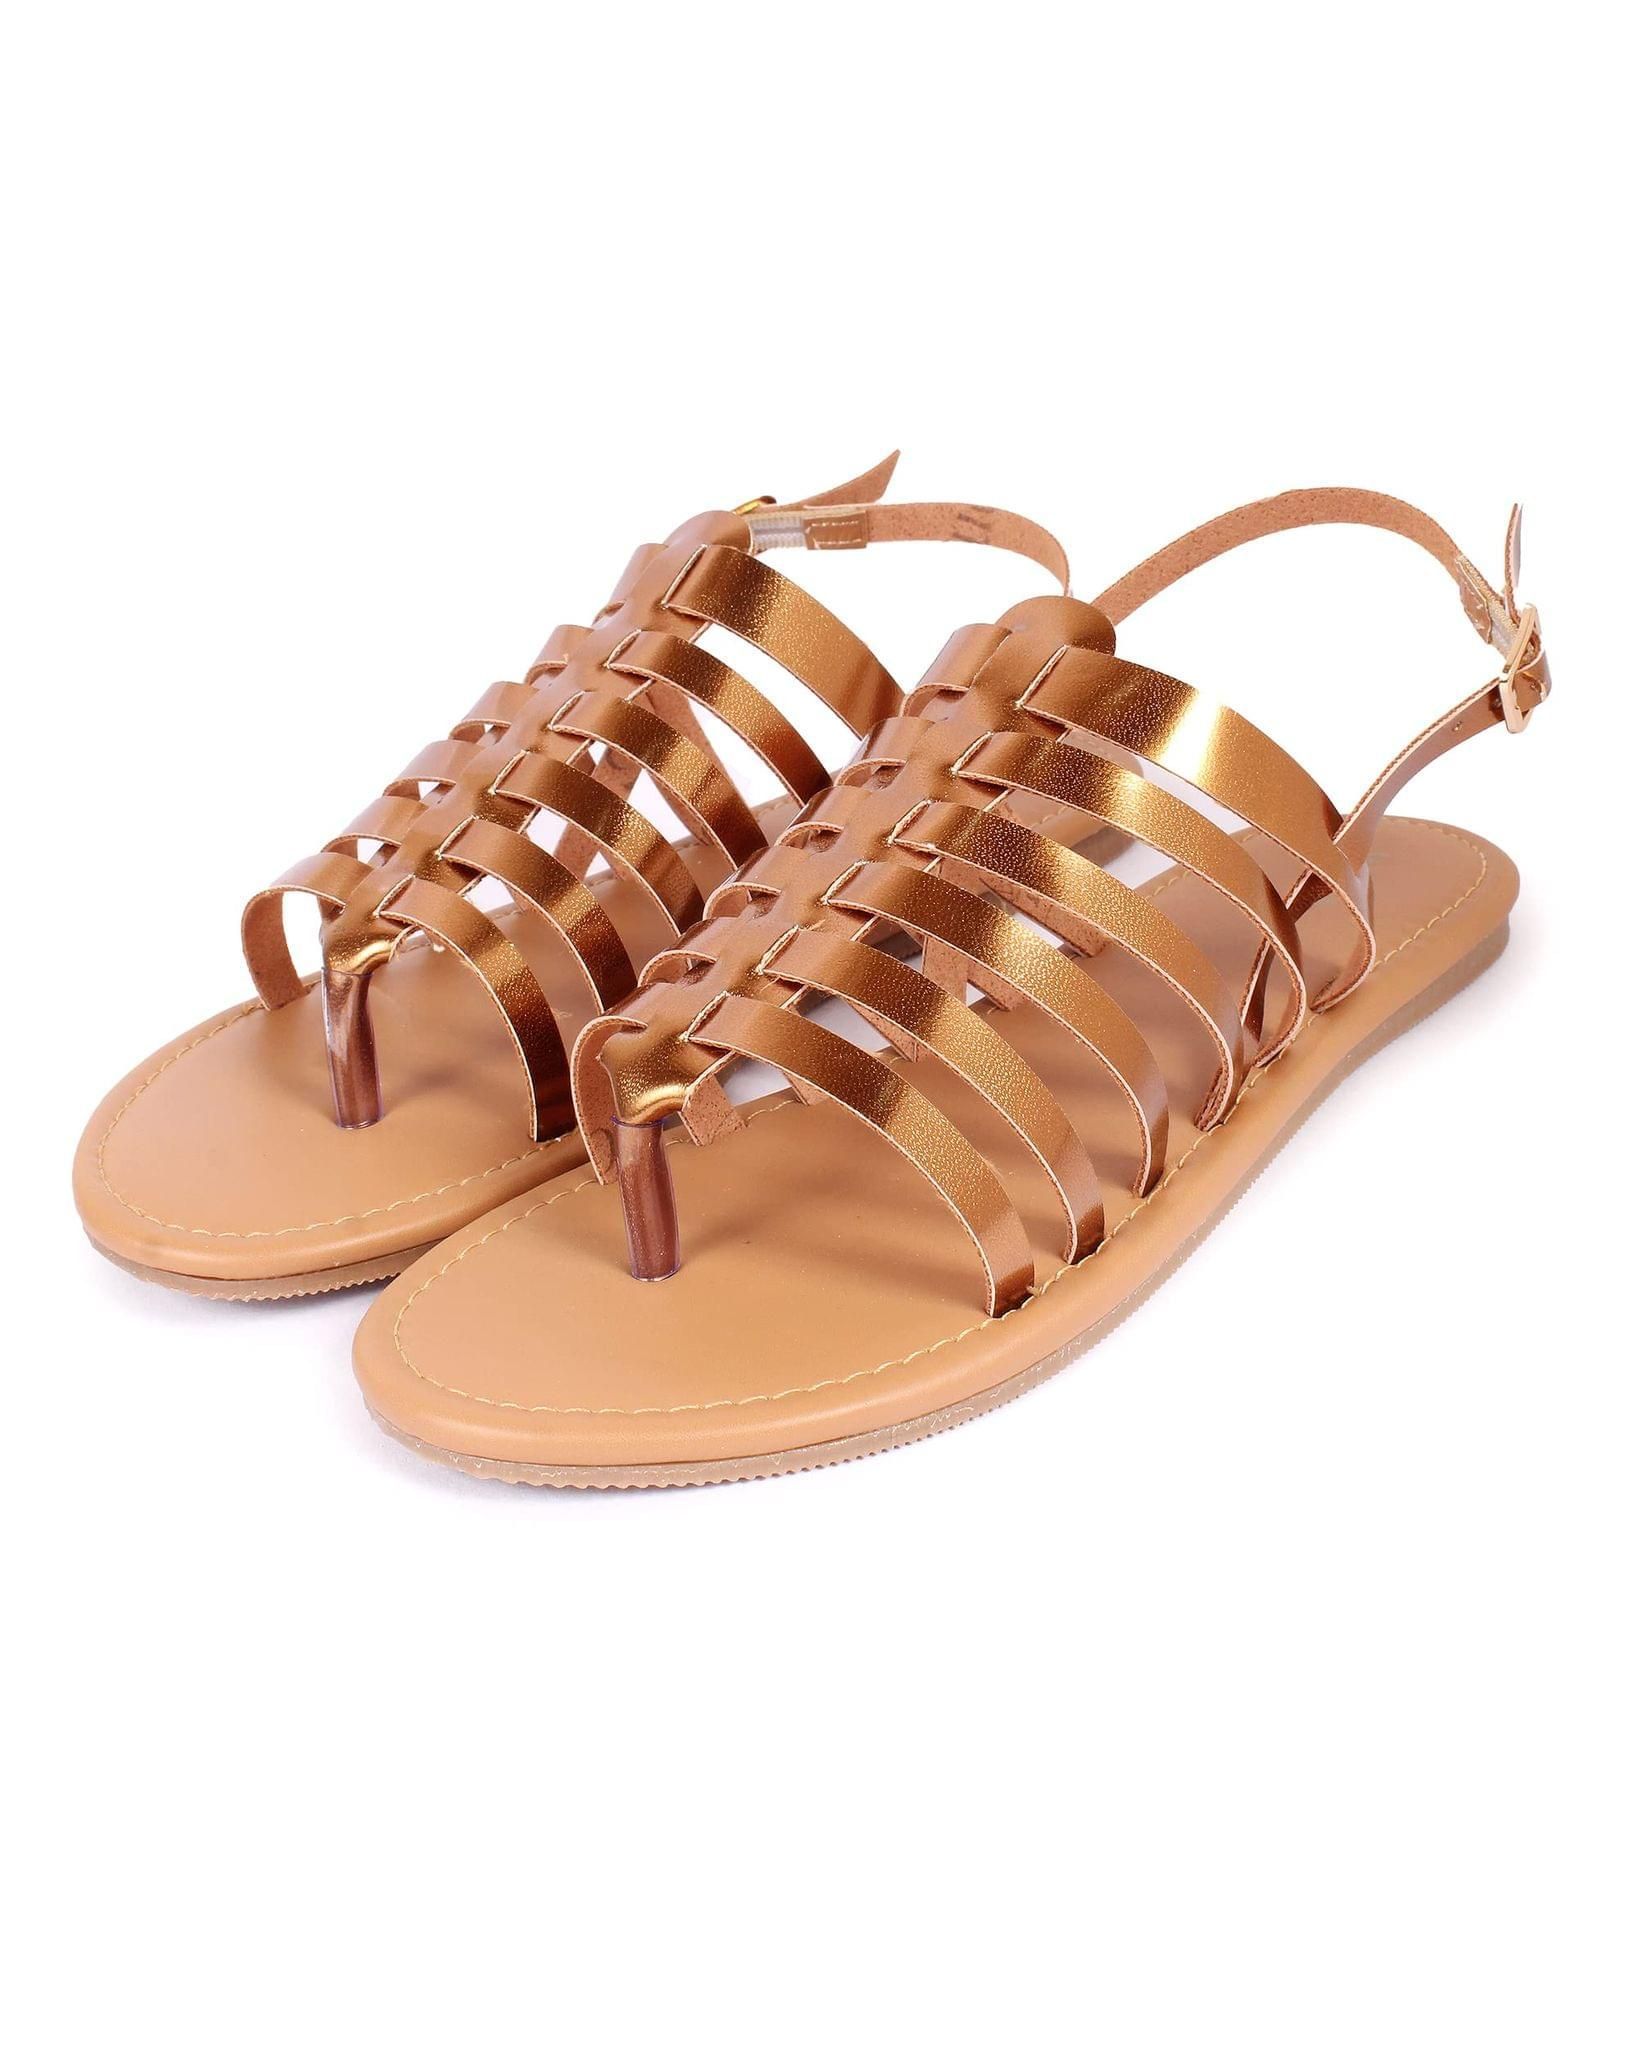 Sandal Tan Brown Elastic Flat - Purely Lush